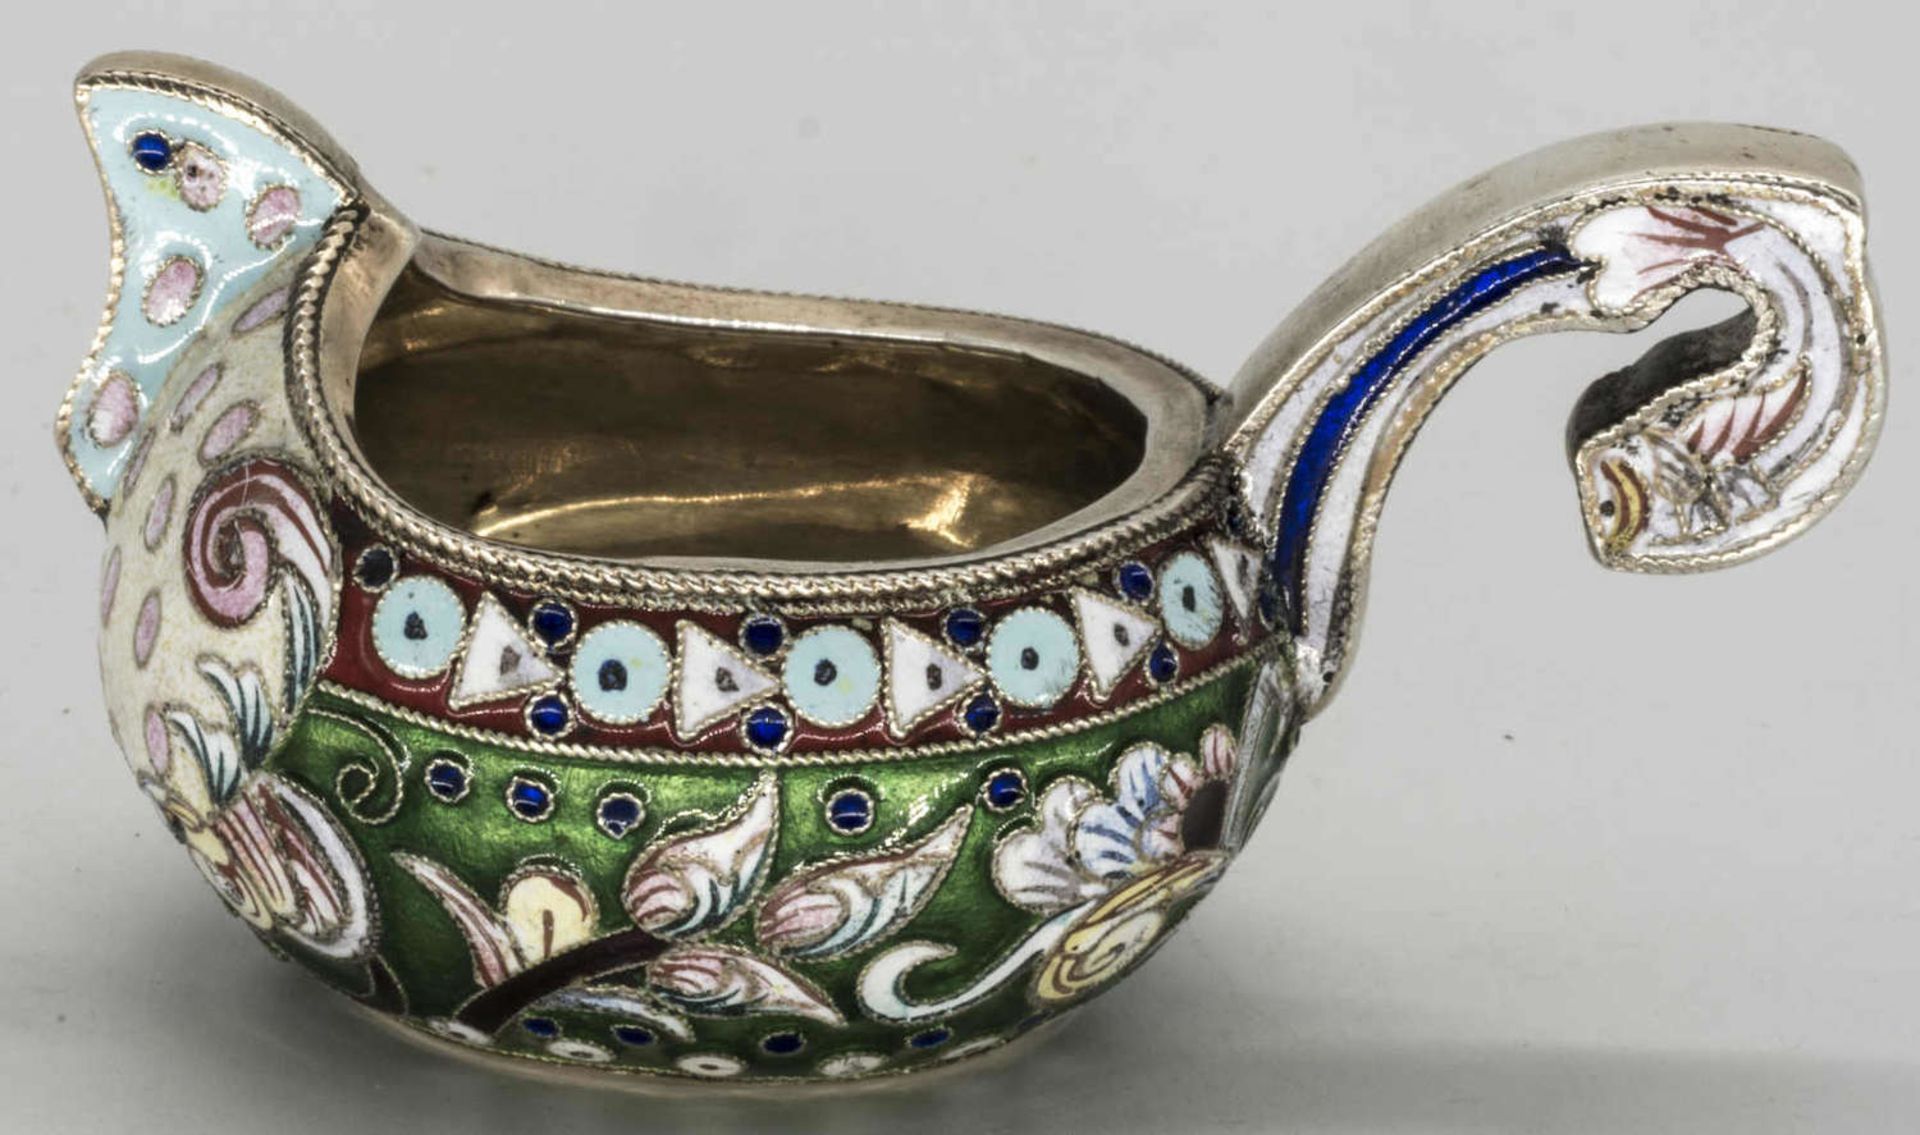 Russischer Cloisonné Kowsch, (1899 - 1908), Silber, oval, verschiedenfarbig floral ornamental